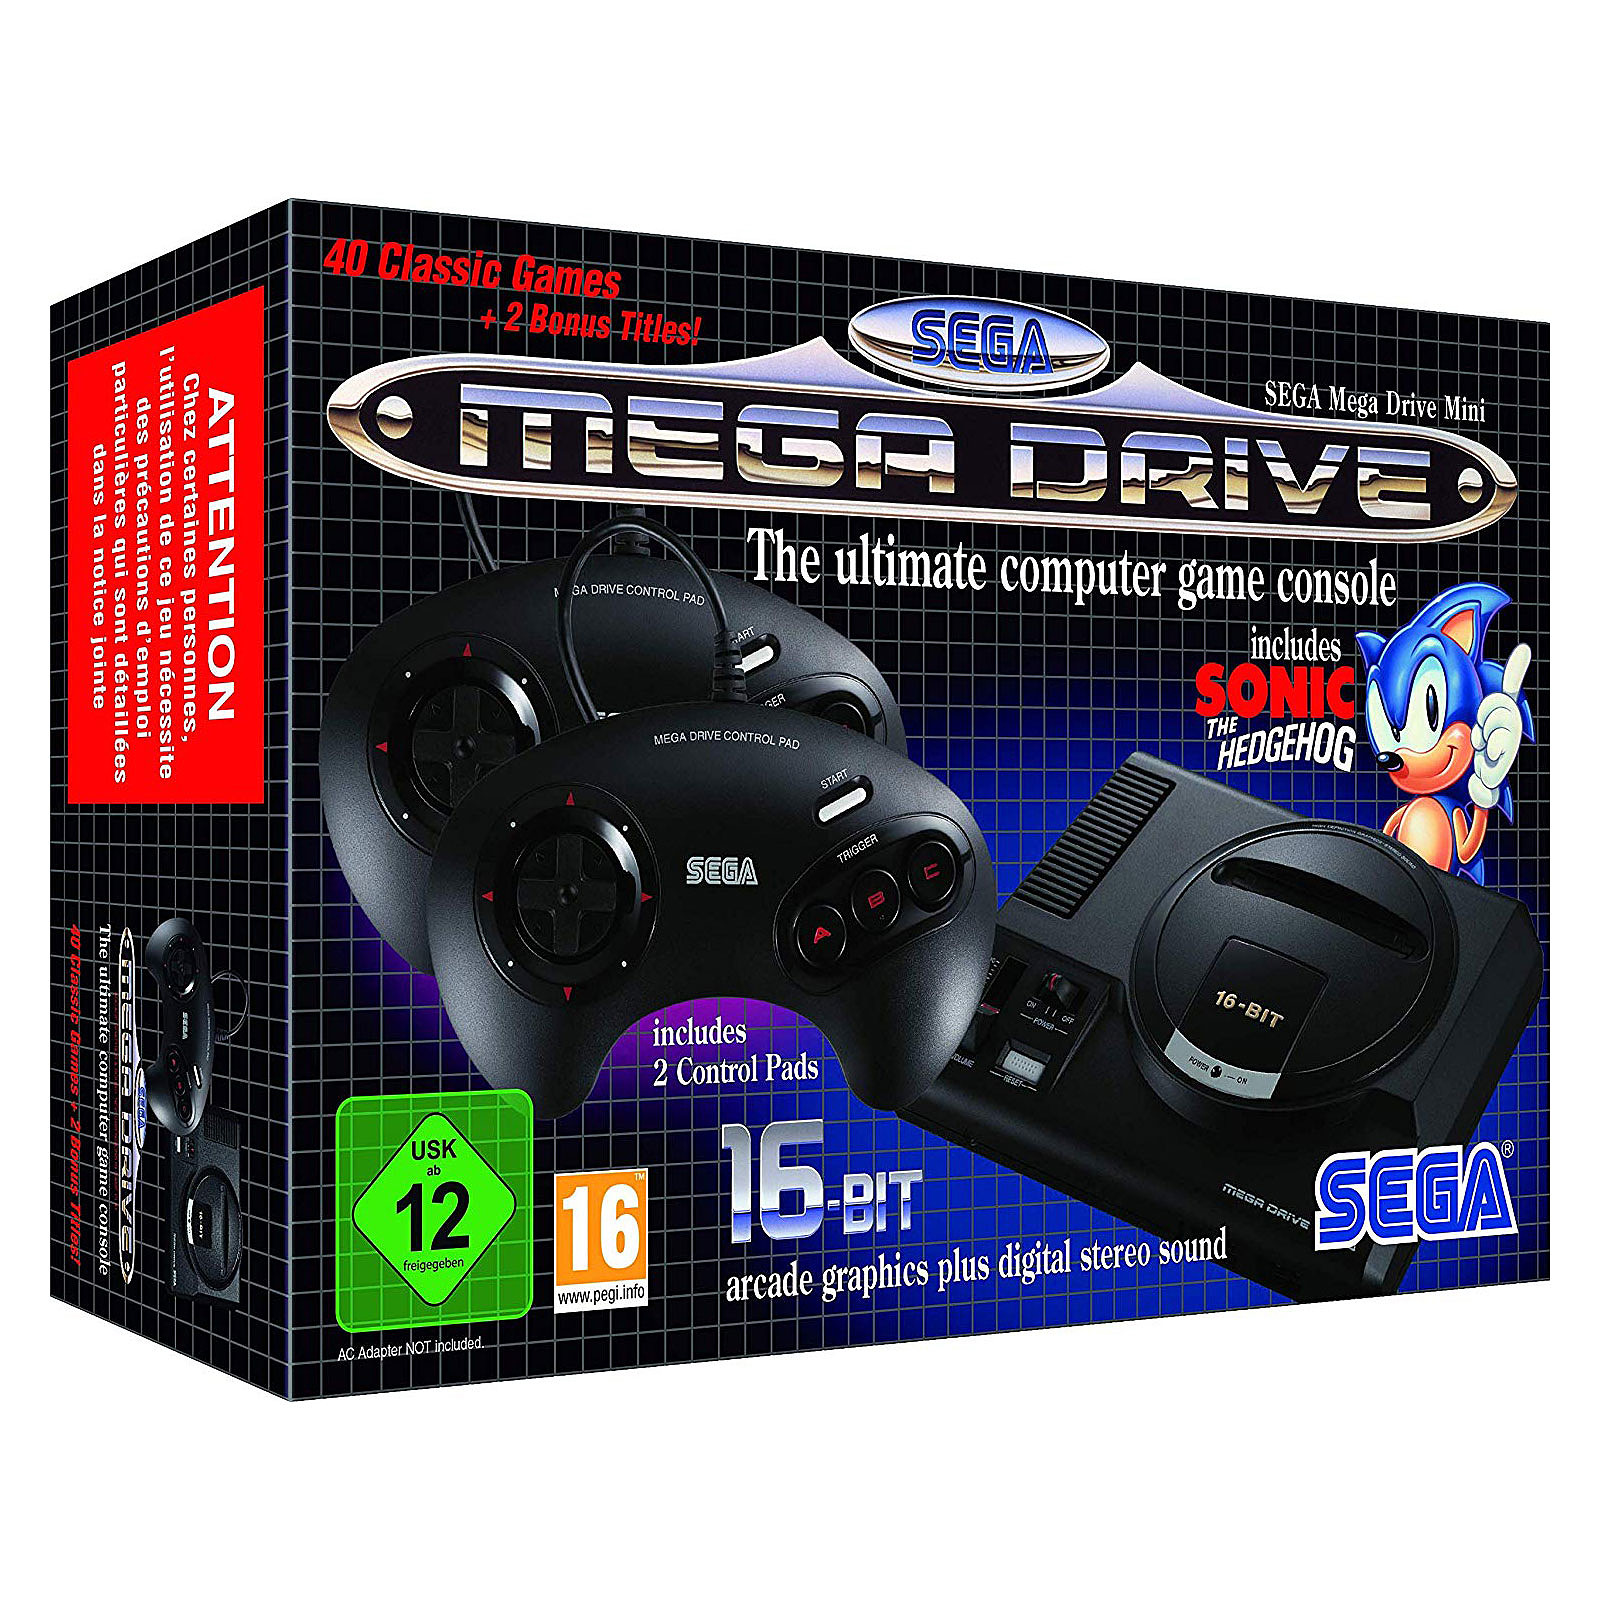 Consola Sega Megadrive Mini